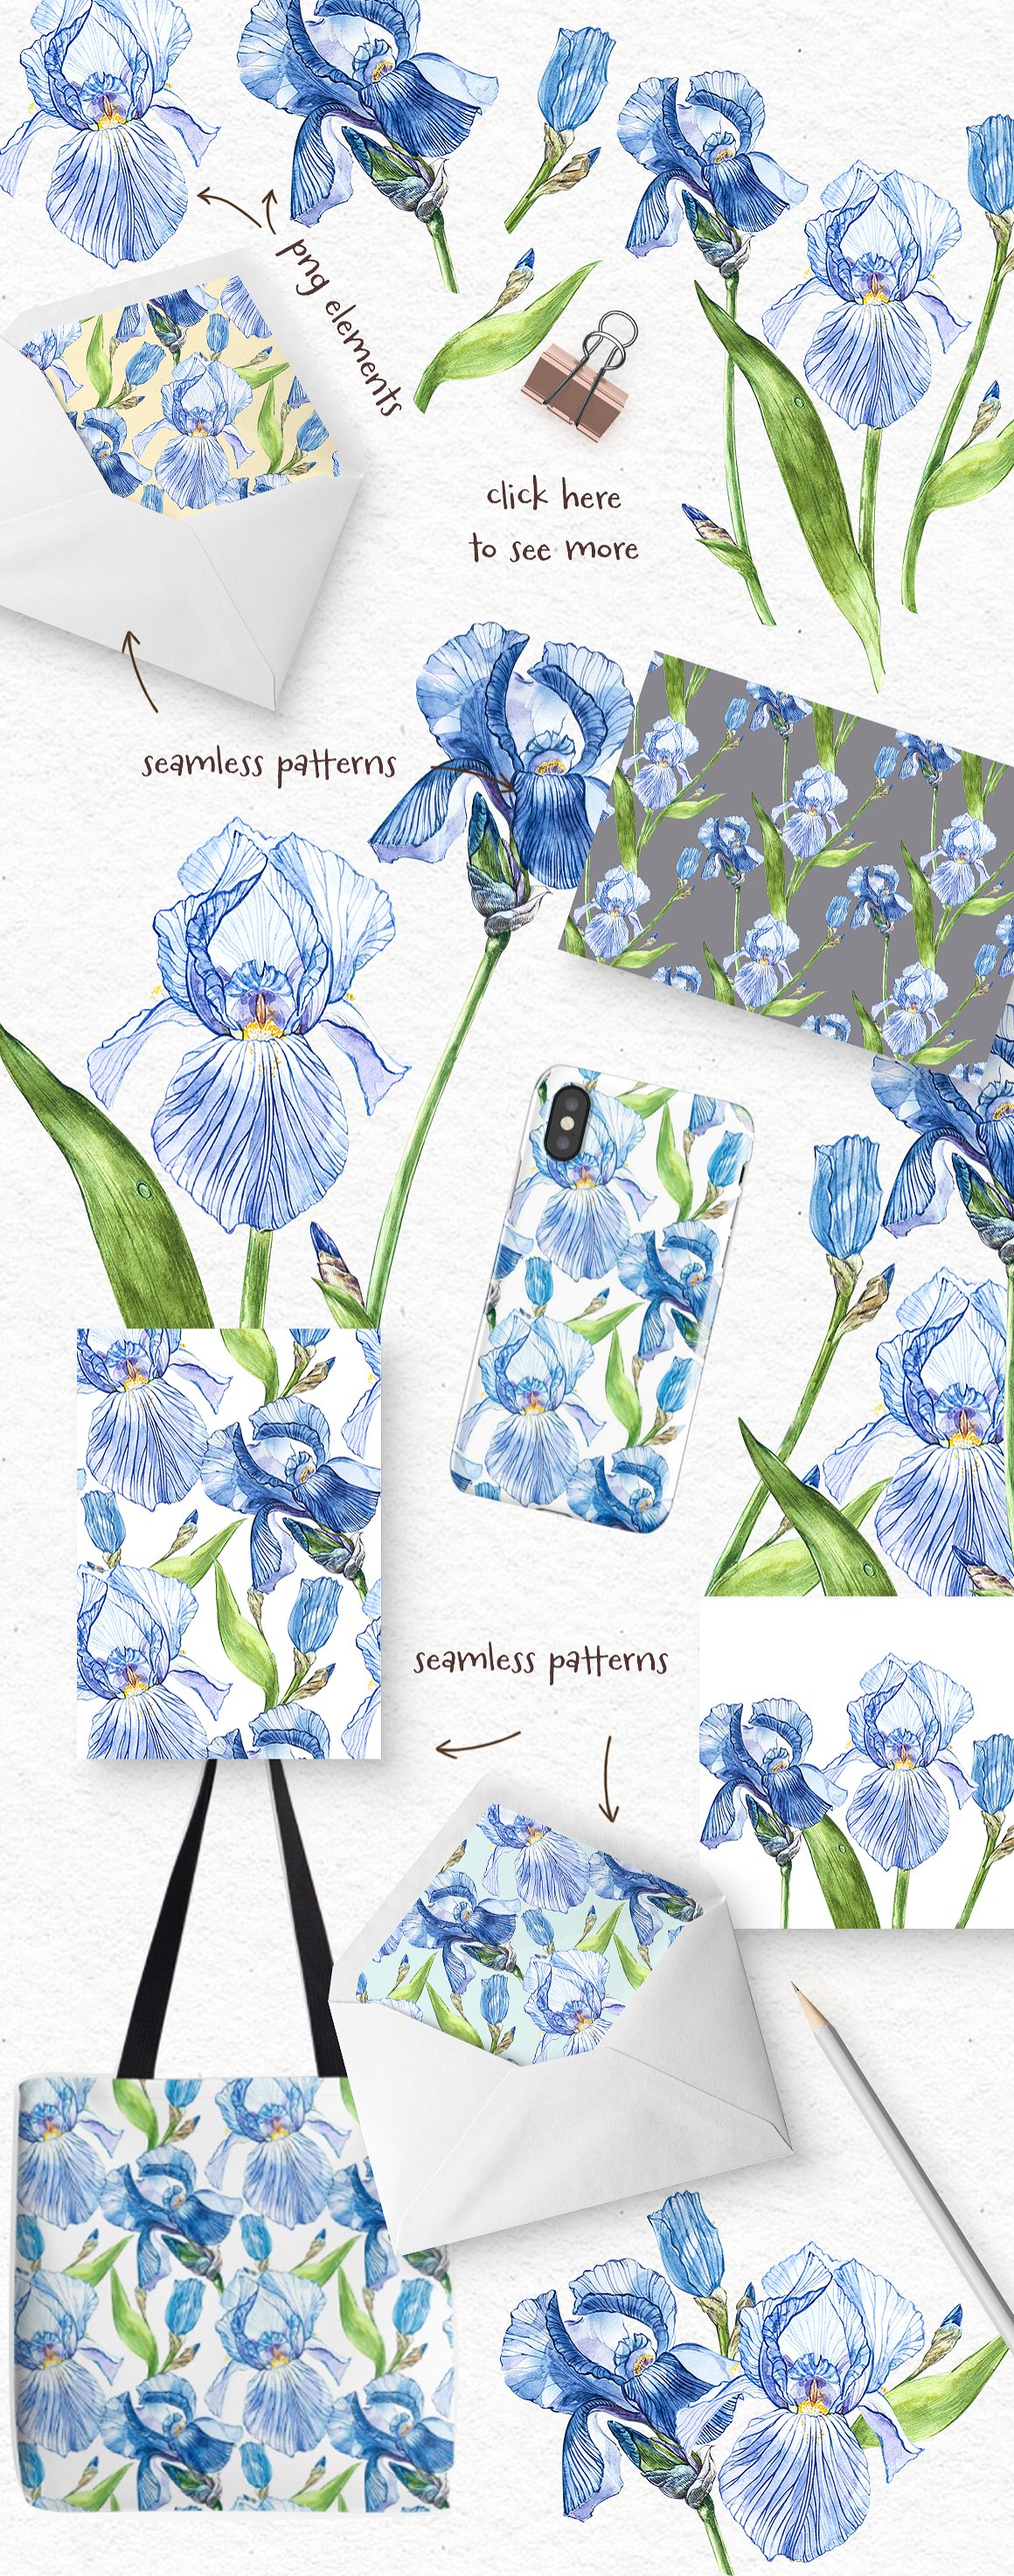 水彩手绘鸢尾花植物插画素材 Iris watercolor